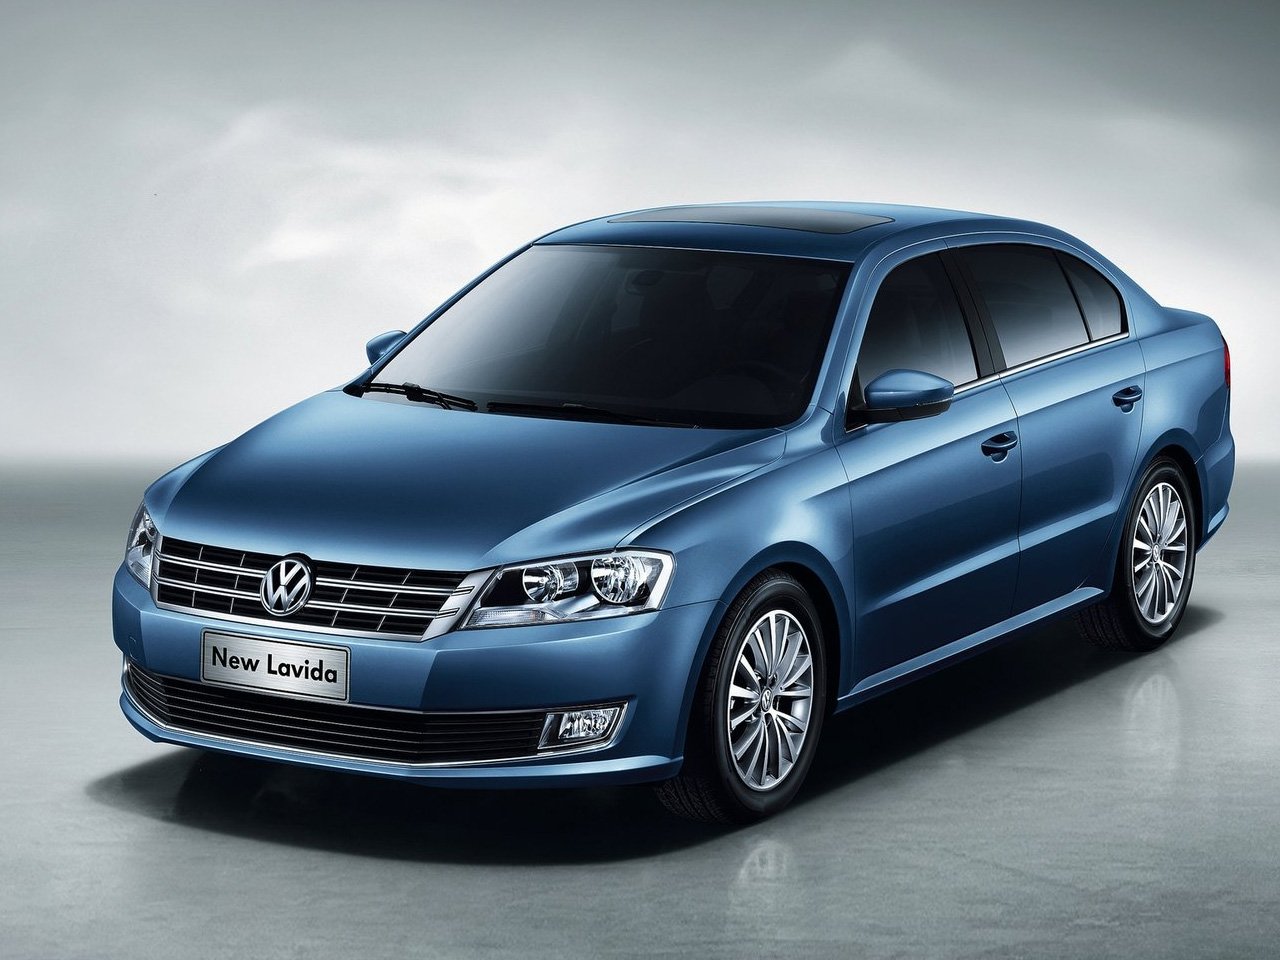 2013-Volkswagen-Lavida-Front-Angle-Top